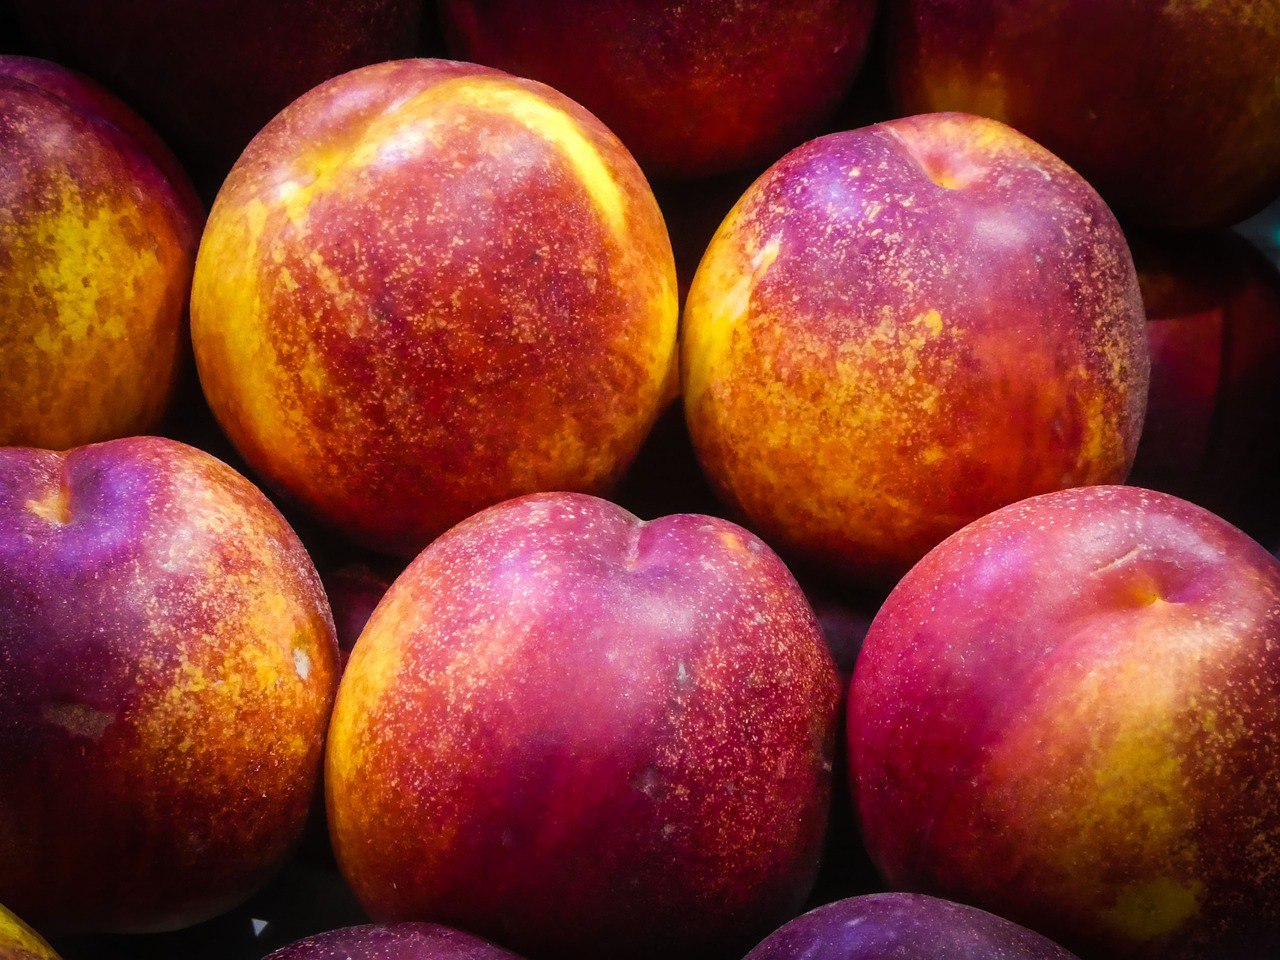 Нектарины в Приморье могут исчезнуть совсем, а цены на фрукты взлетят-импортеры